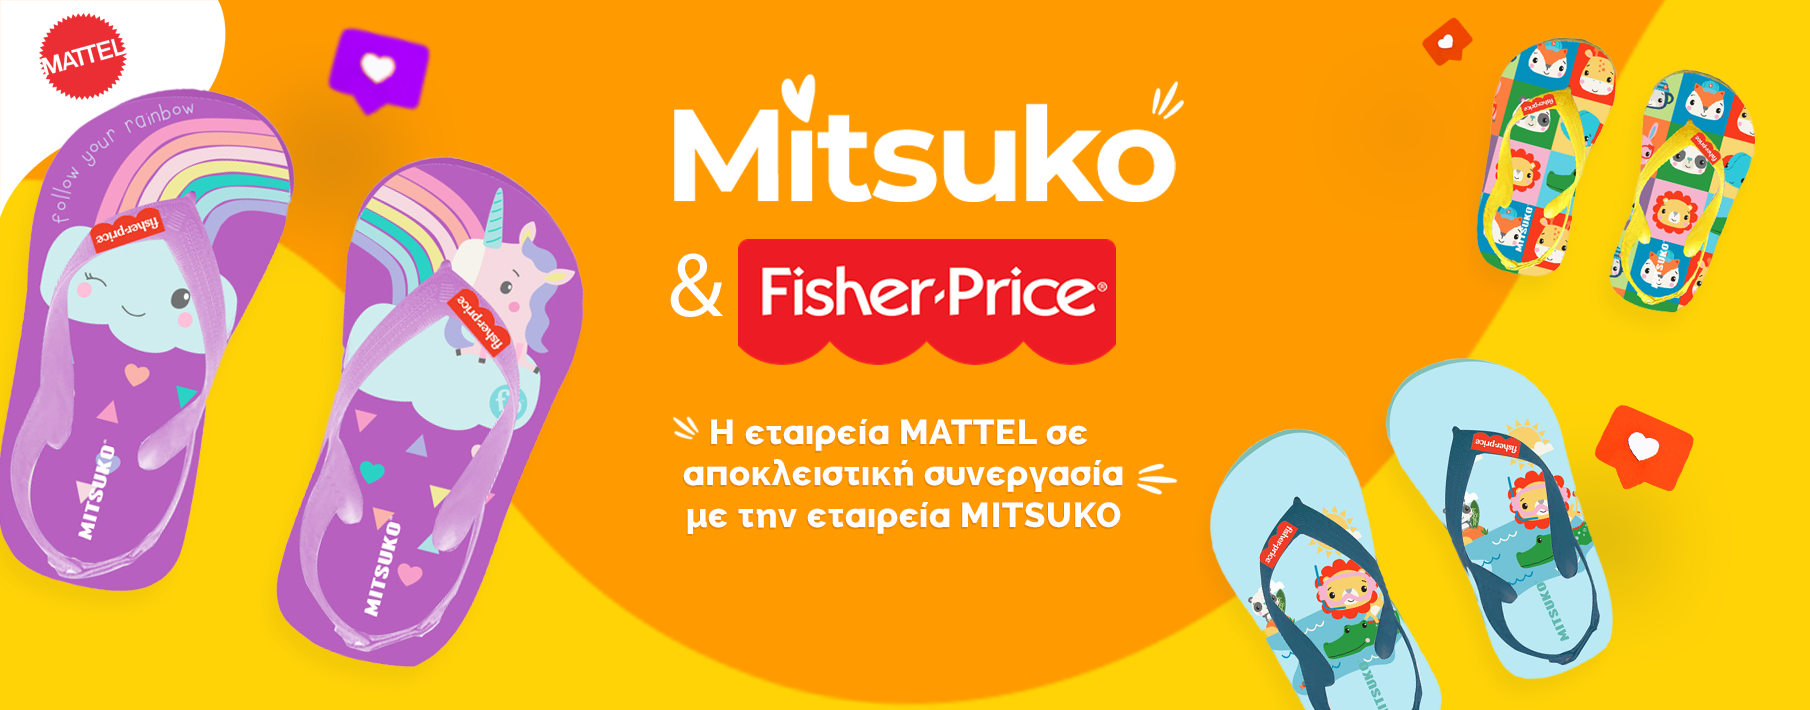 Fischer Price Mitsuko